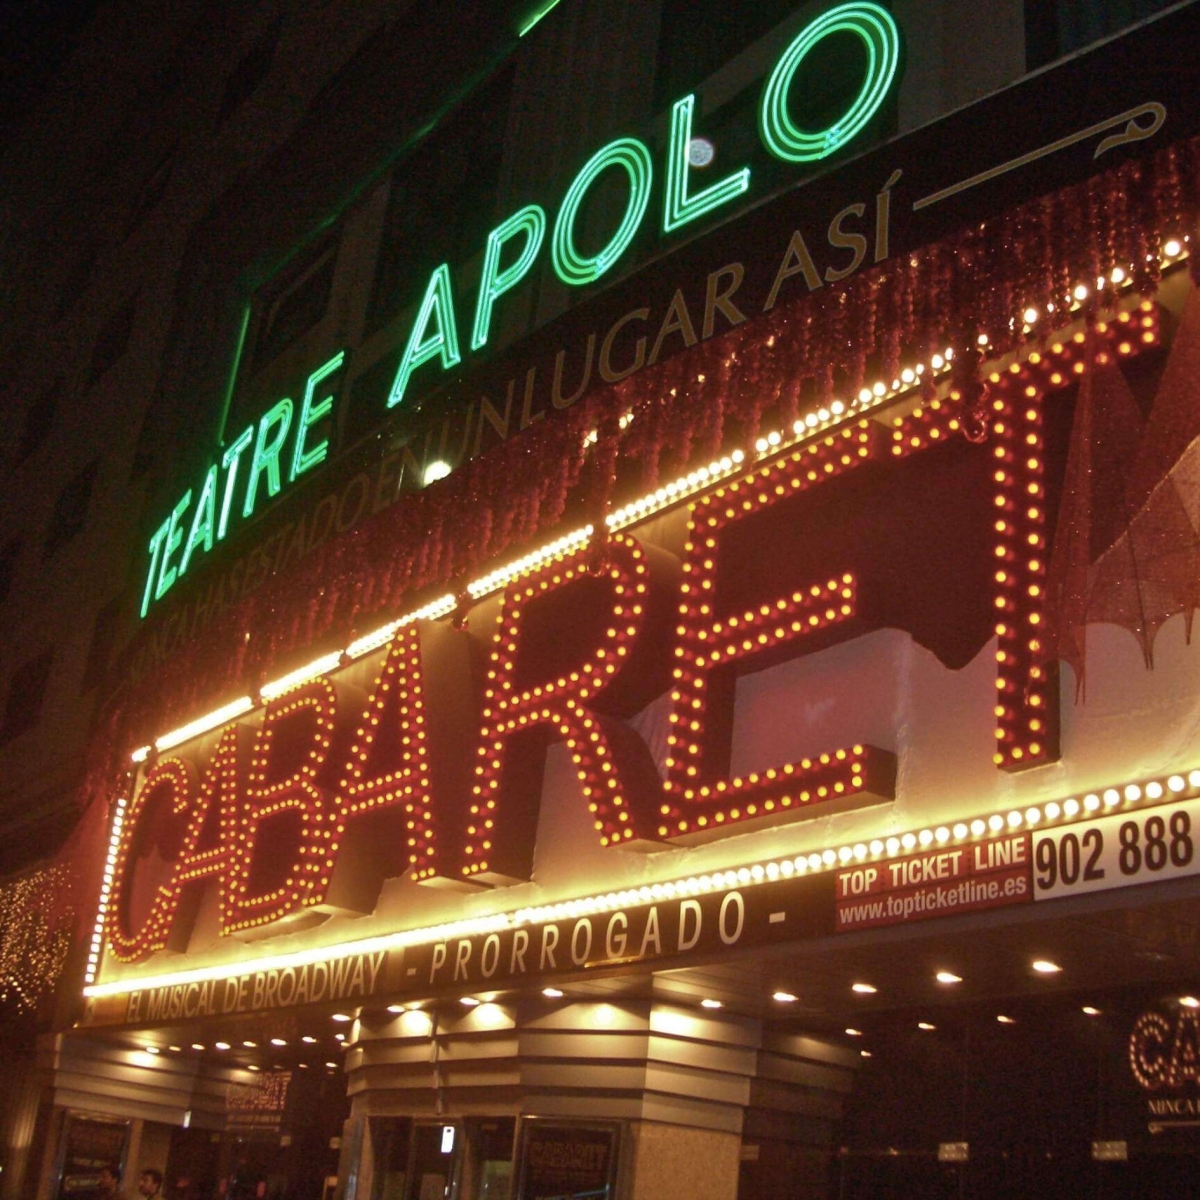 Apolo Theater